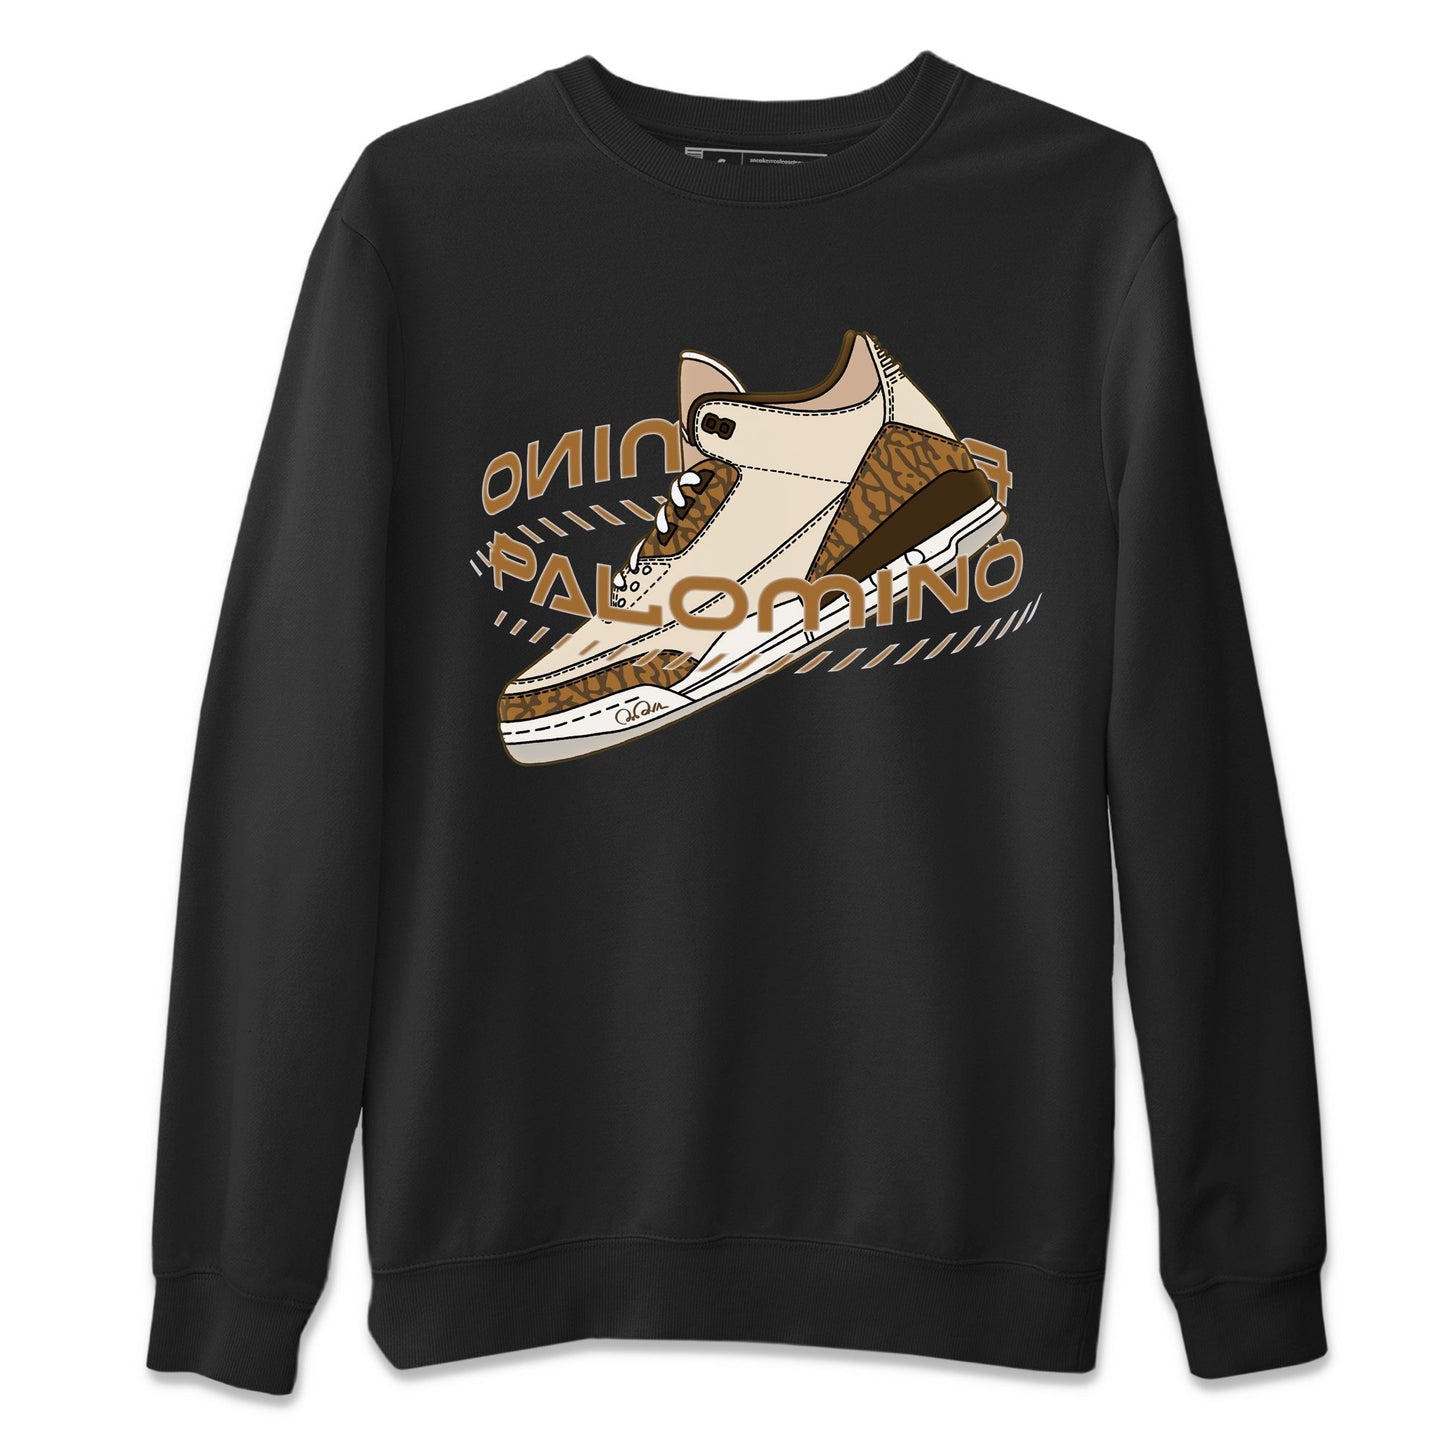 Air Jordan 3 Palomino Sneaker Match Tees Warping Space Sneaker Tees AJ3 Palomino Sneaker Release Tees Unisex Shirts Black 2